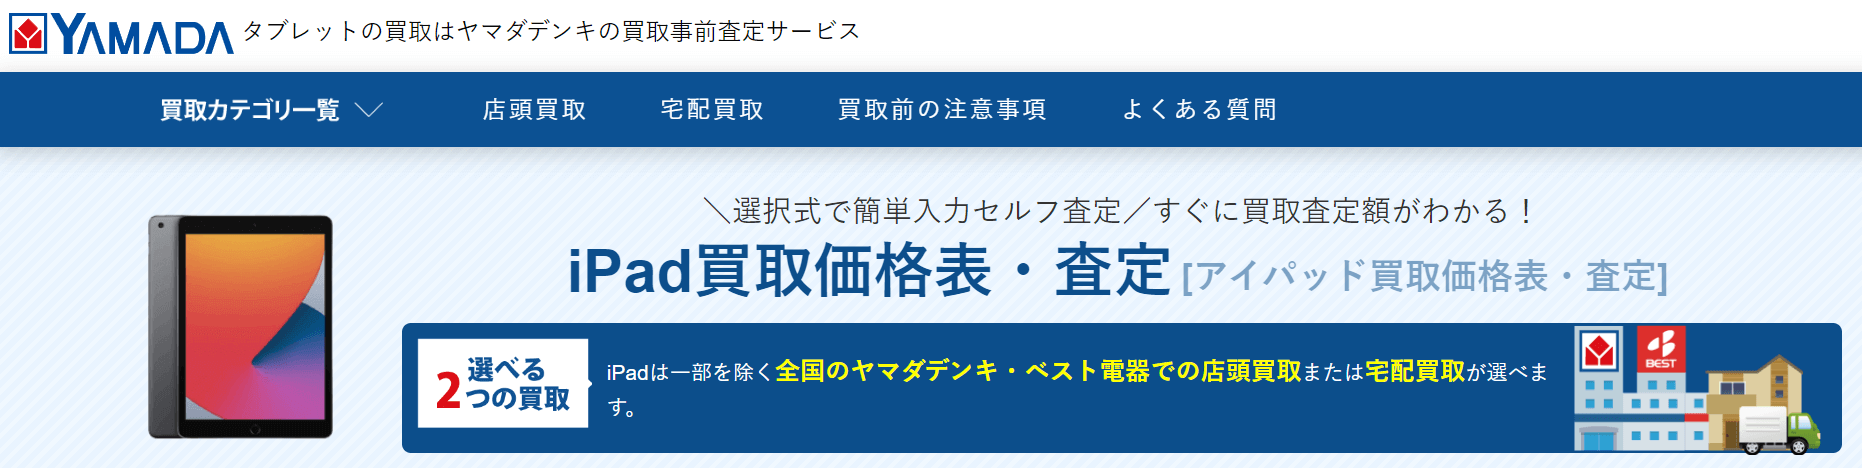 ヤマダ電機のiPad買取・事前査定サービス